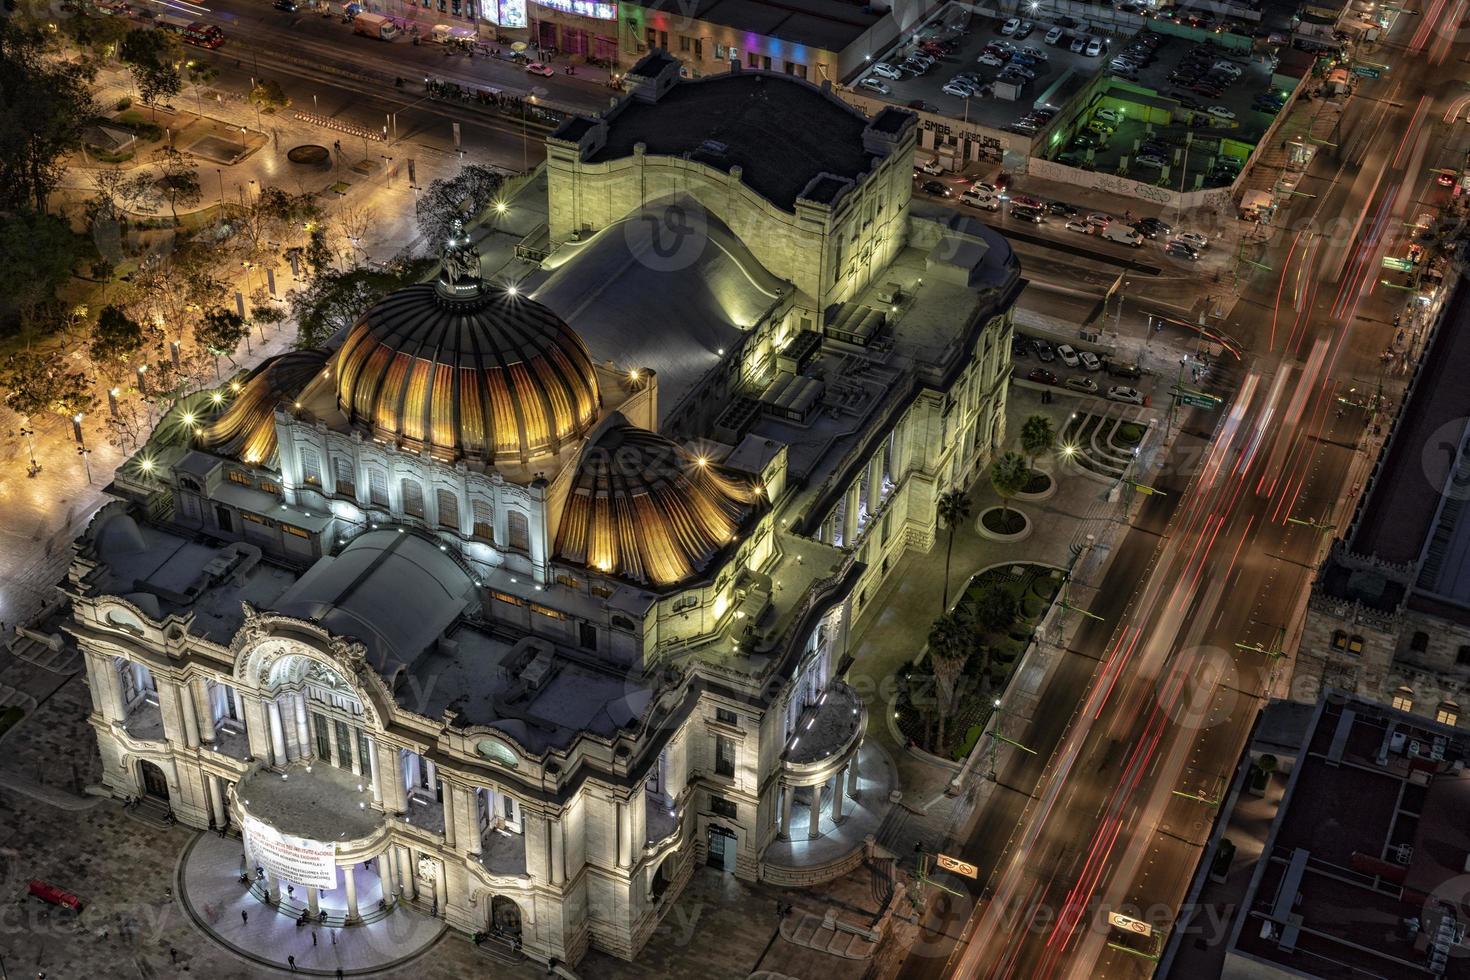 vista aérea noturna do palácio das artes da cidade do méxico foto